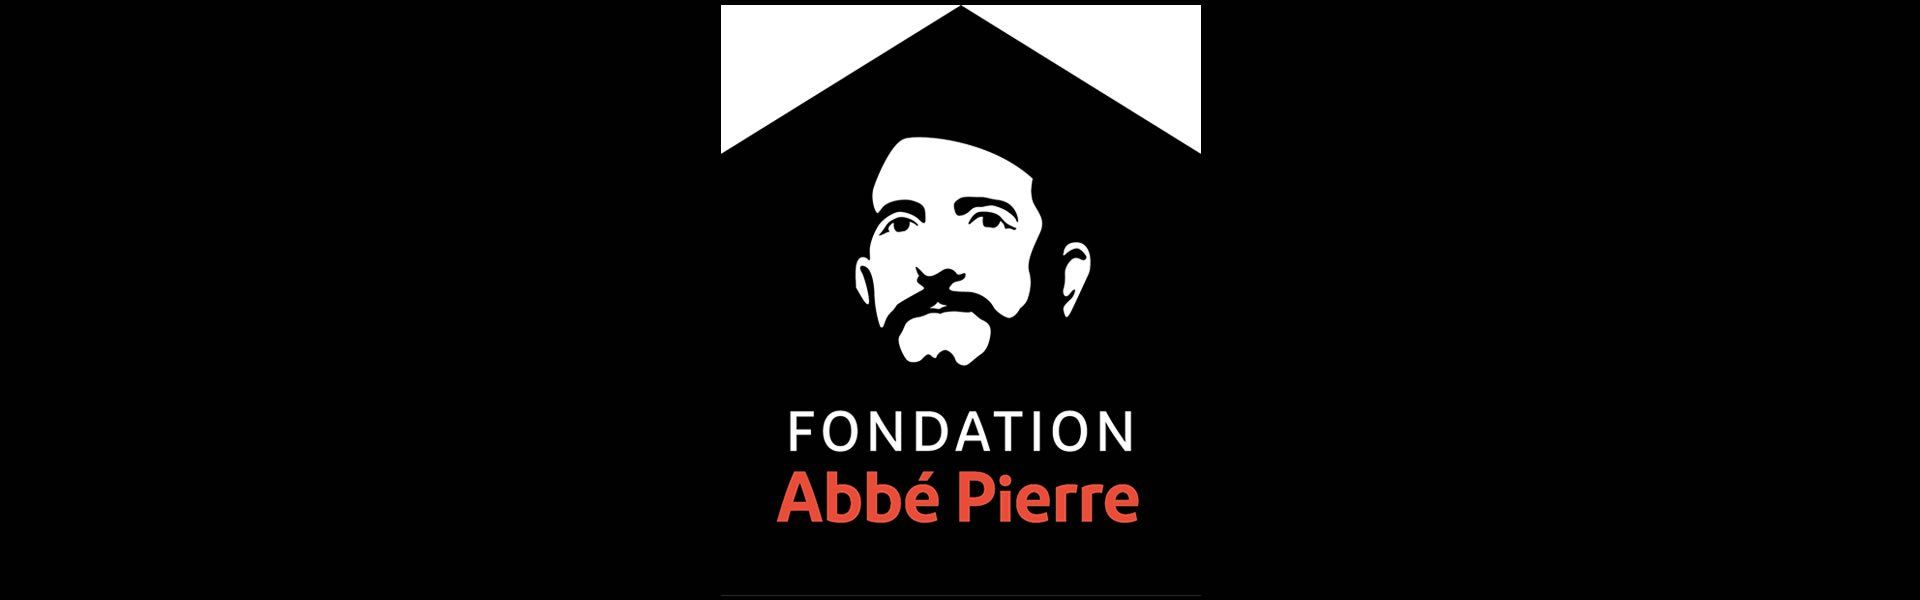 Fondation de l'Abbé Pierre logo